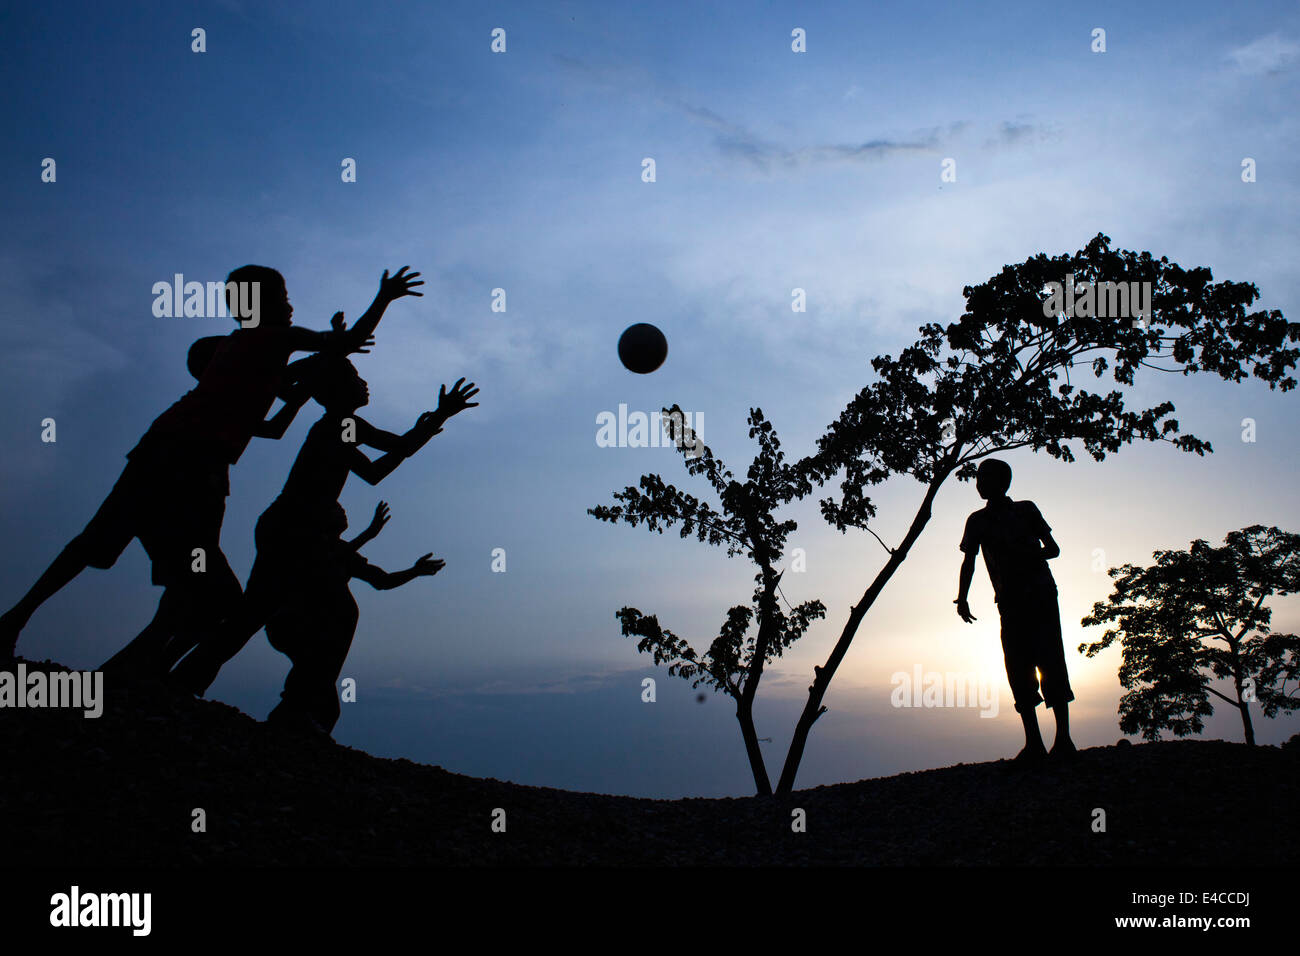 Kinder spielen Fußball während des Sonnenuntergangs, Asien, Bangladesch, junge, Kind, Farbe, Bild, Land, Entwicklungsländer, Länder, Unterhaltung, Spaß Stockfoto